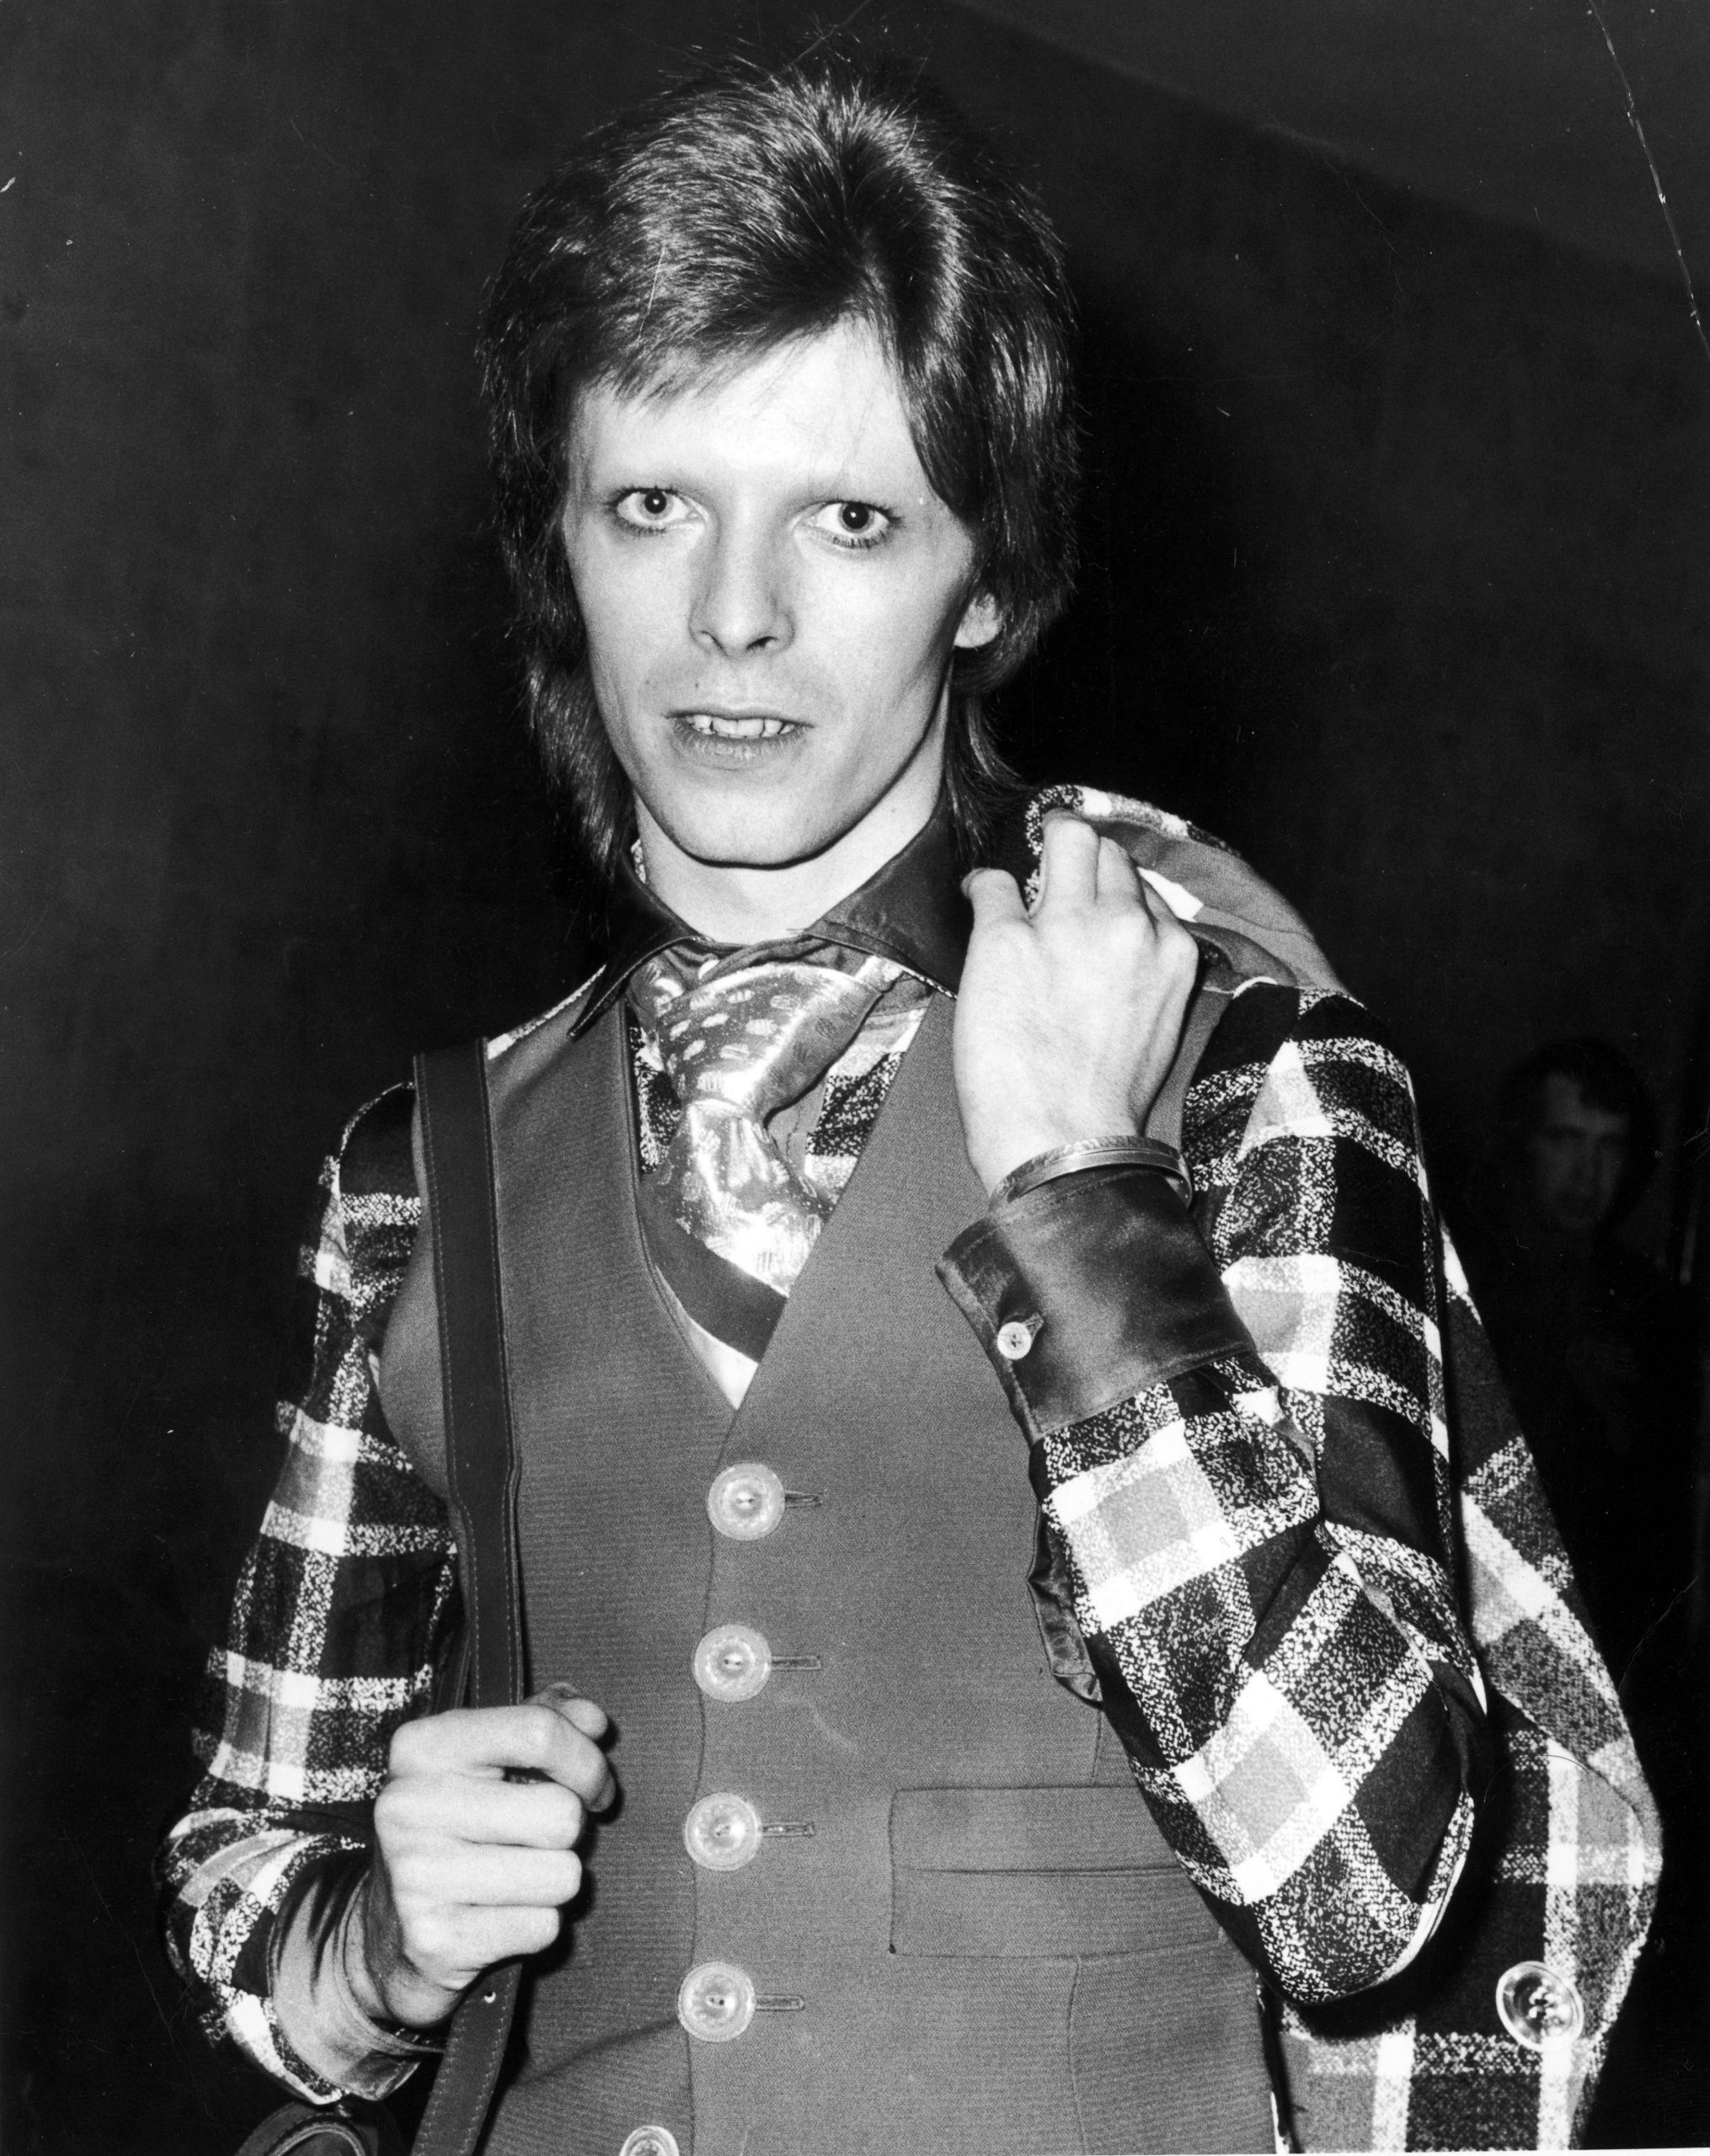 David Bowie en Londres en 1973 / Foto: Getty Images